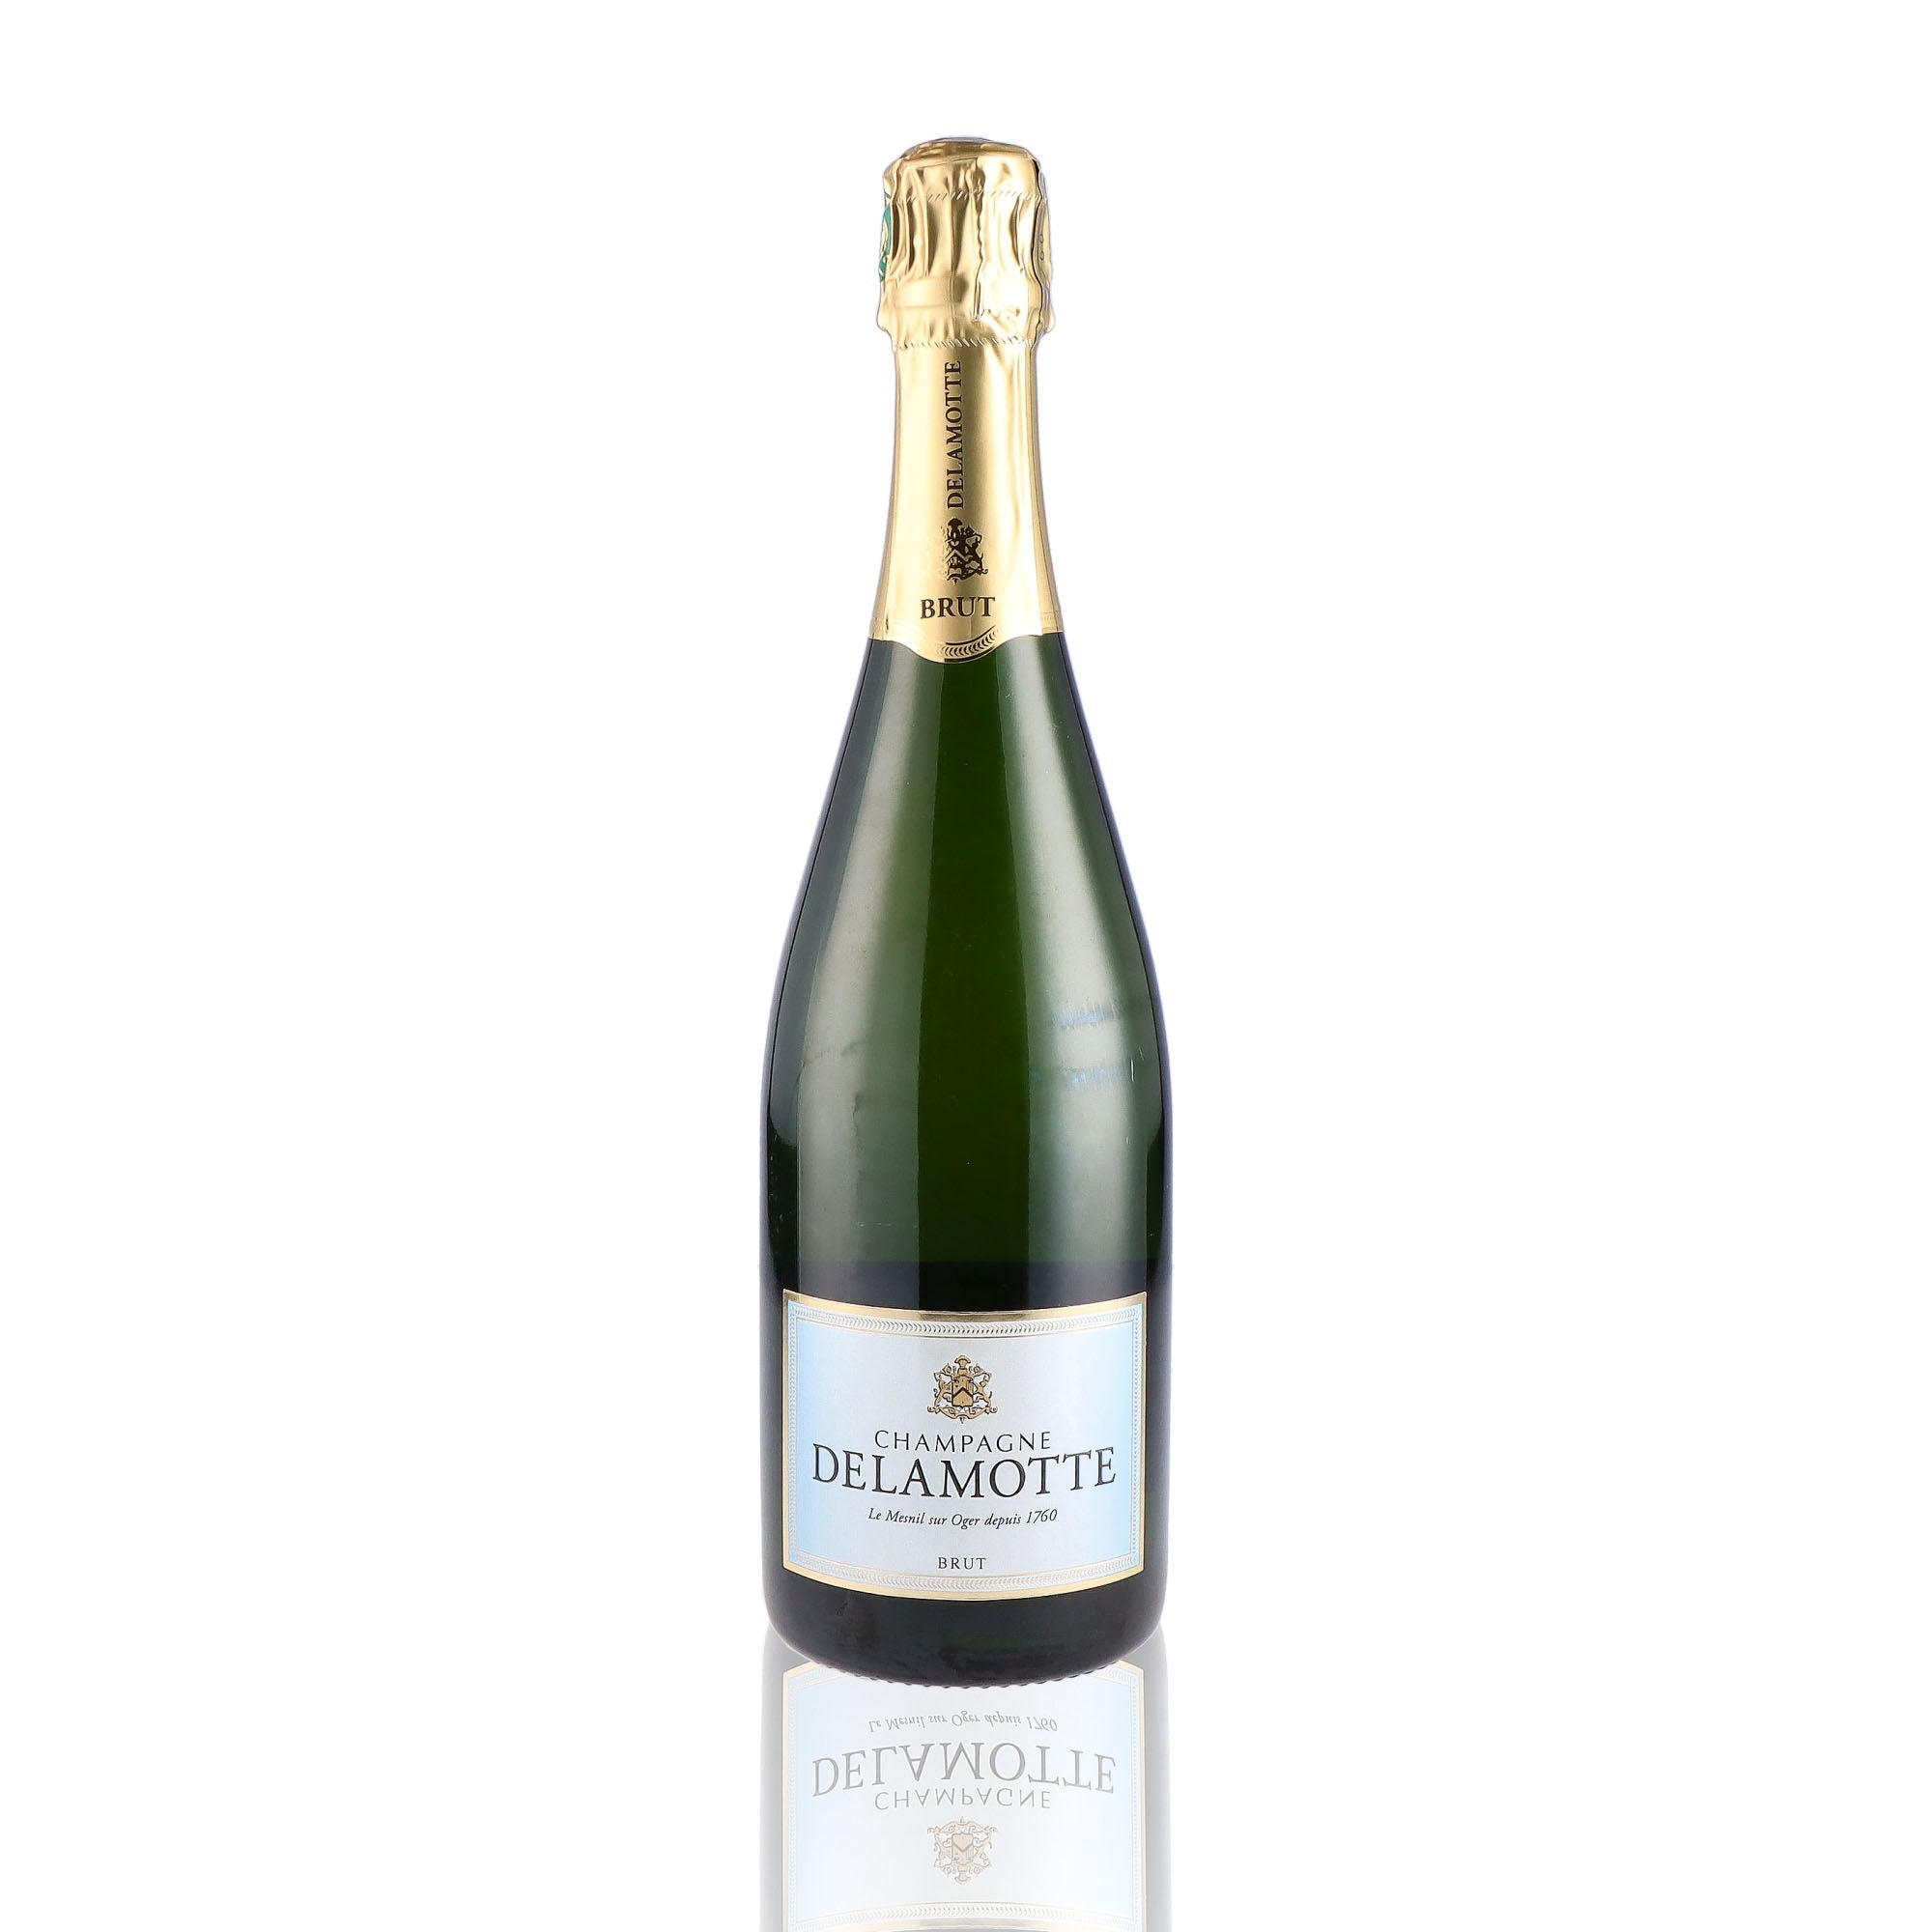 Une bouteille de champagne de la marque Delamotte, de type brut.